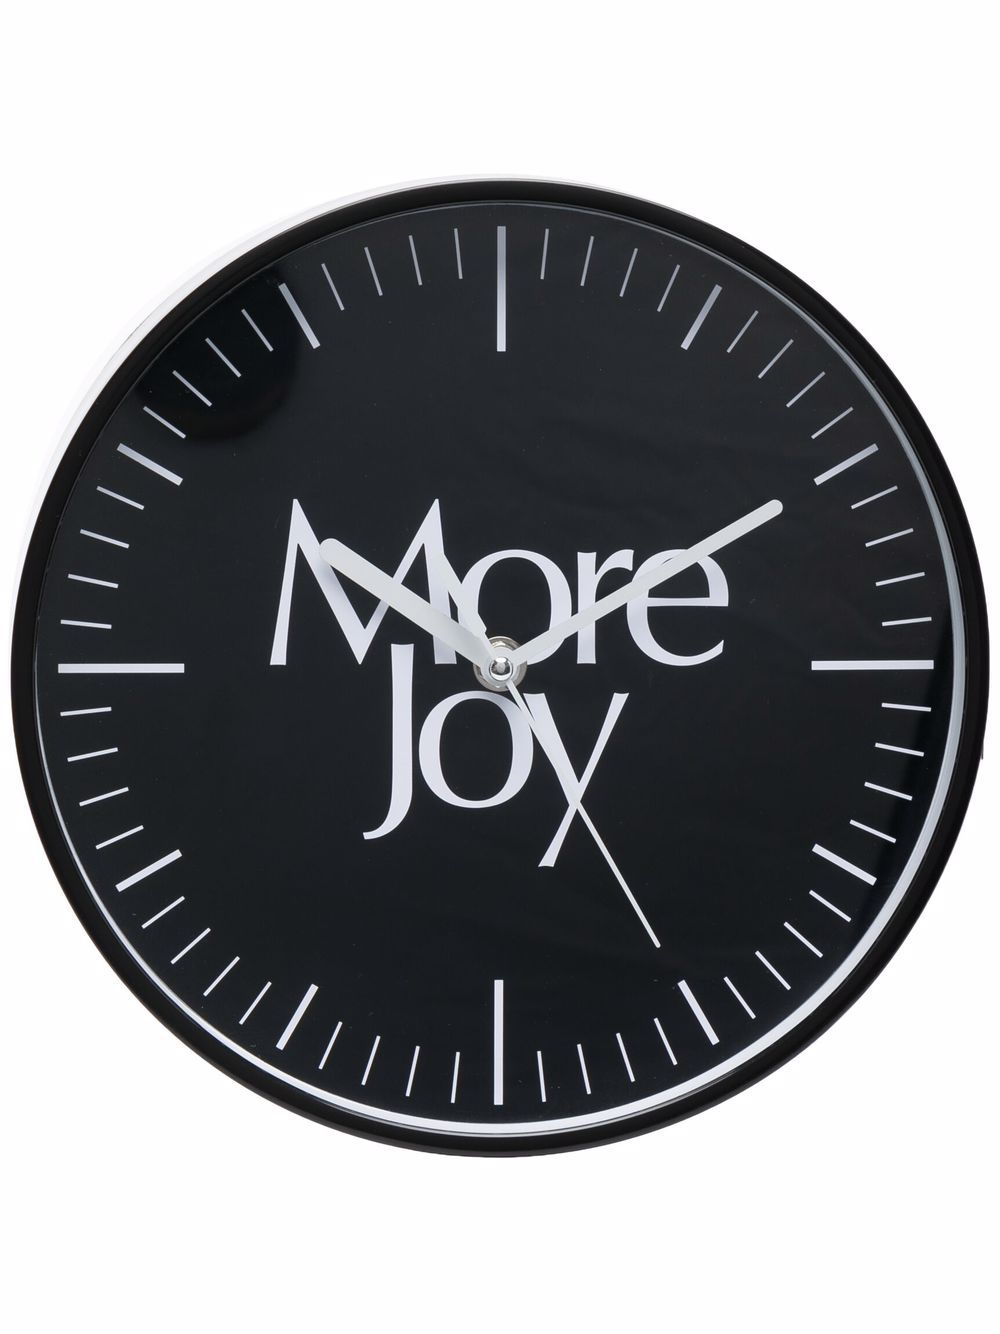 фото More joy часы с логотипом